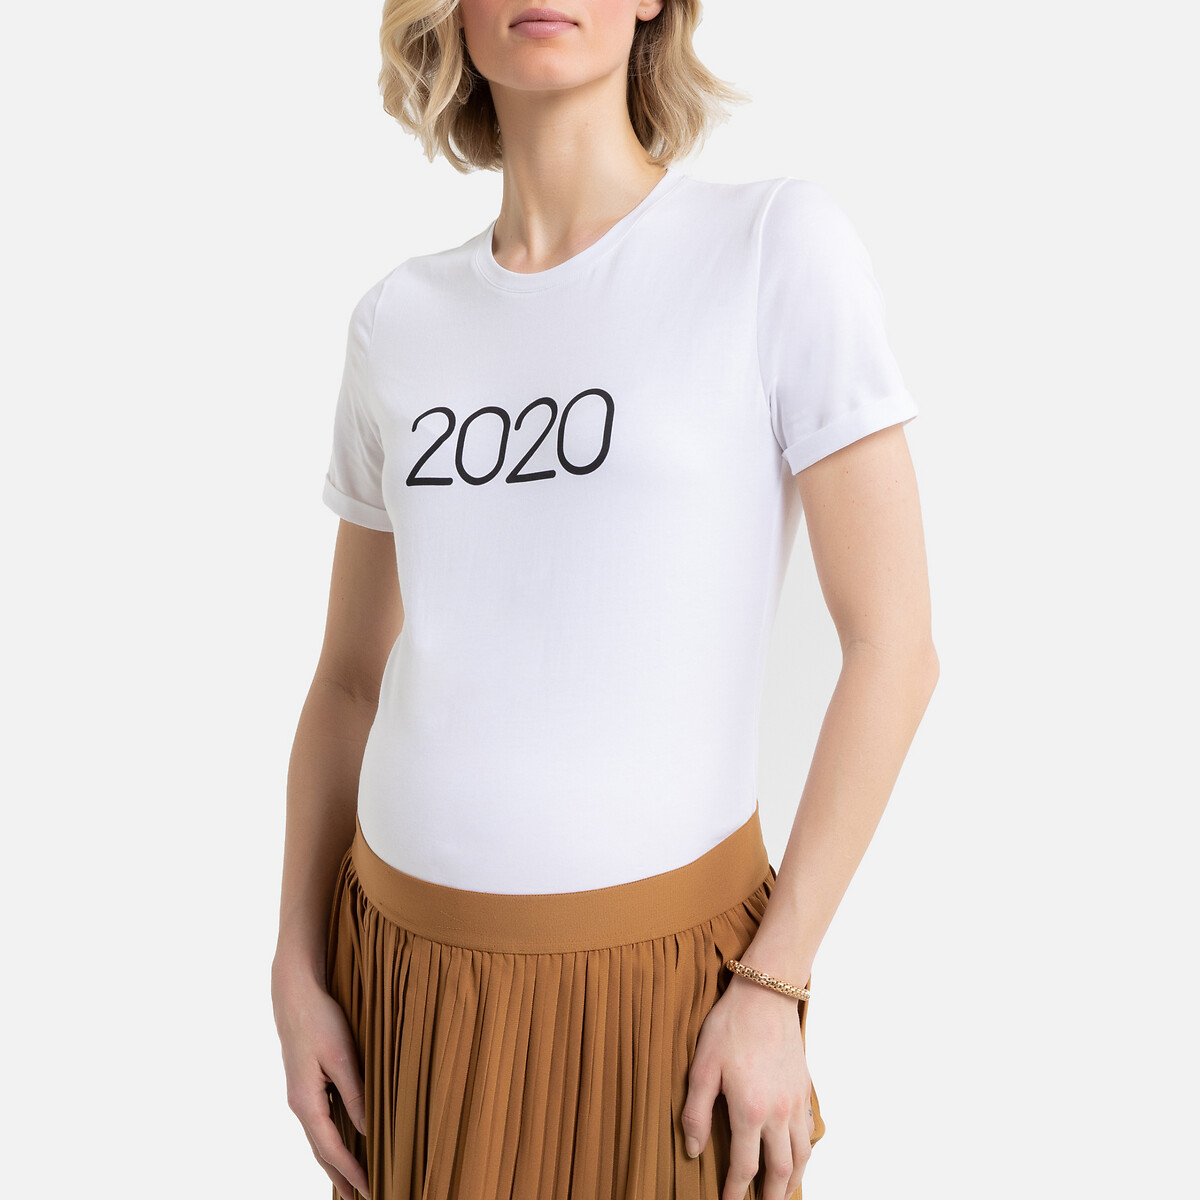 T-shirt para grávida com mensagem 2020